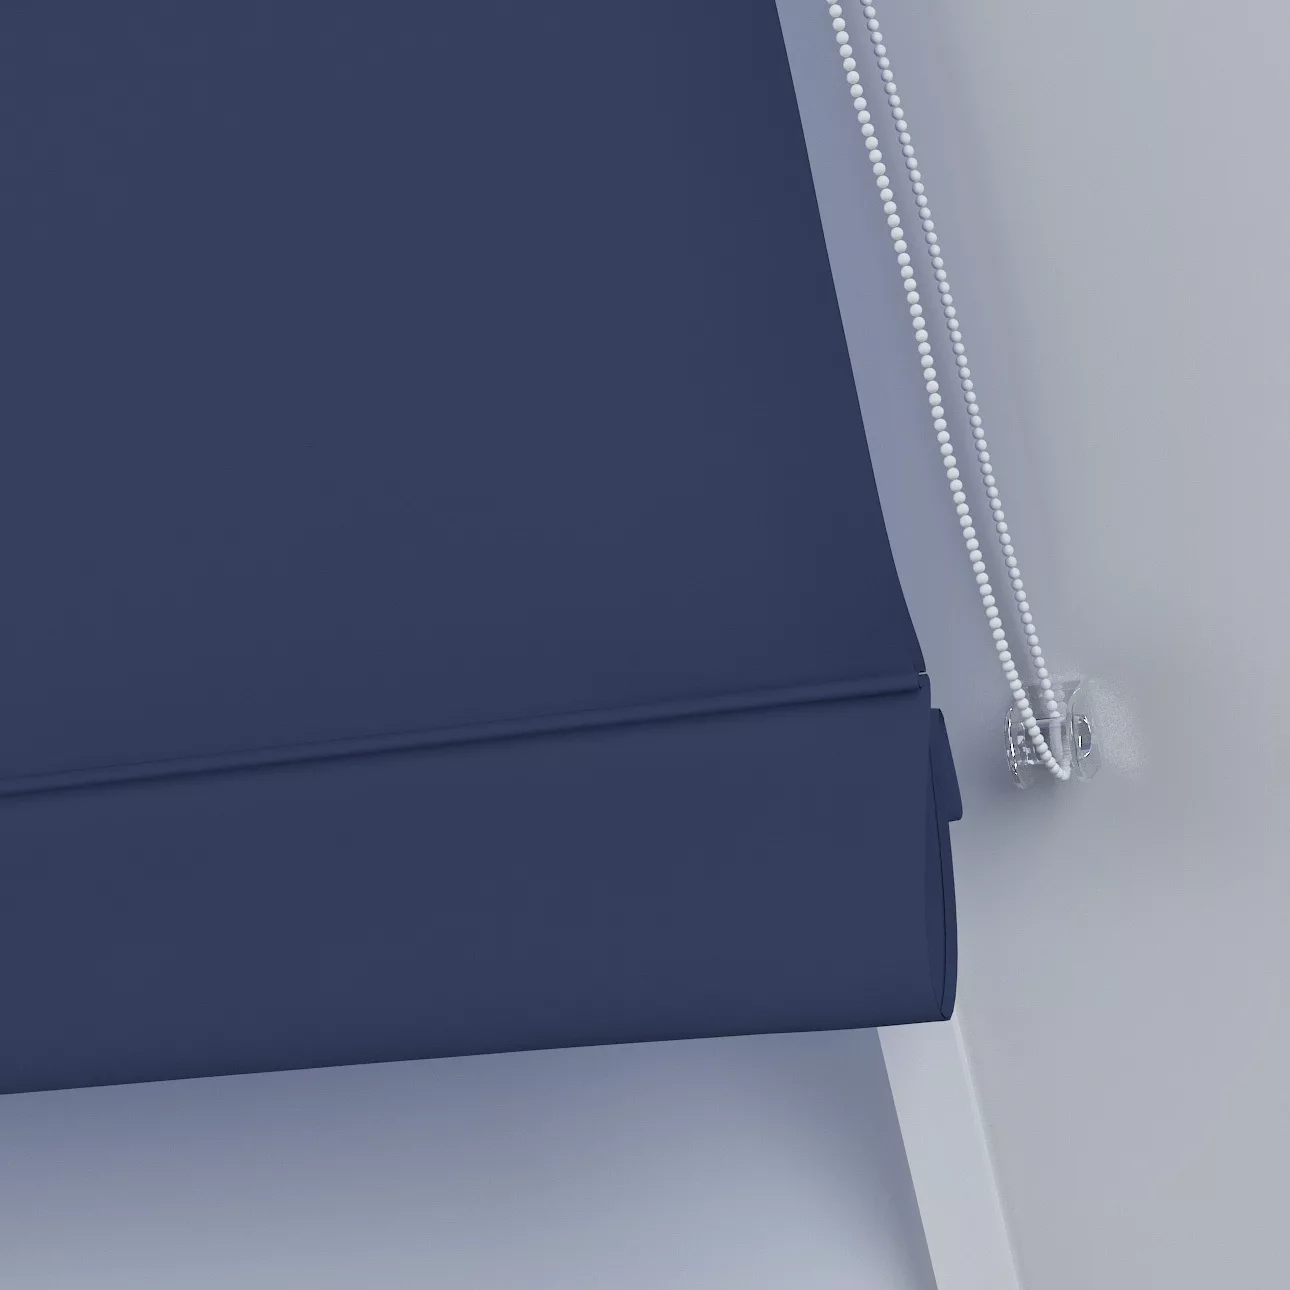 Dekoria Dachfenster-Raffrollo Rimini, dunkelblau, 50 x 60 cm günstig online kaufen